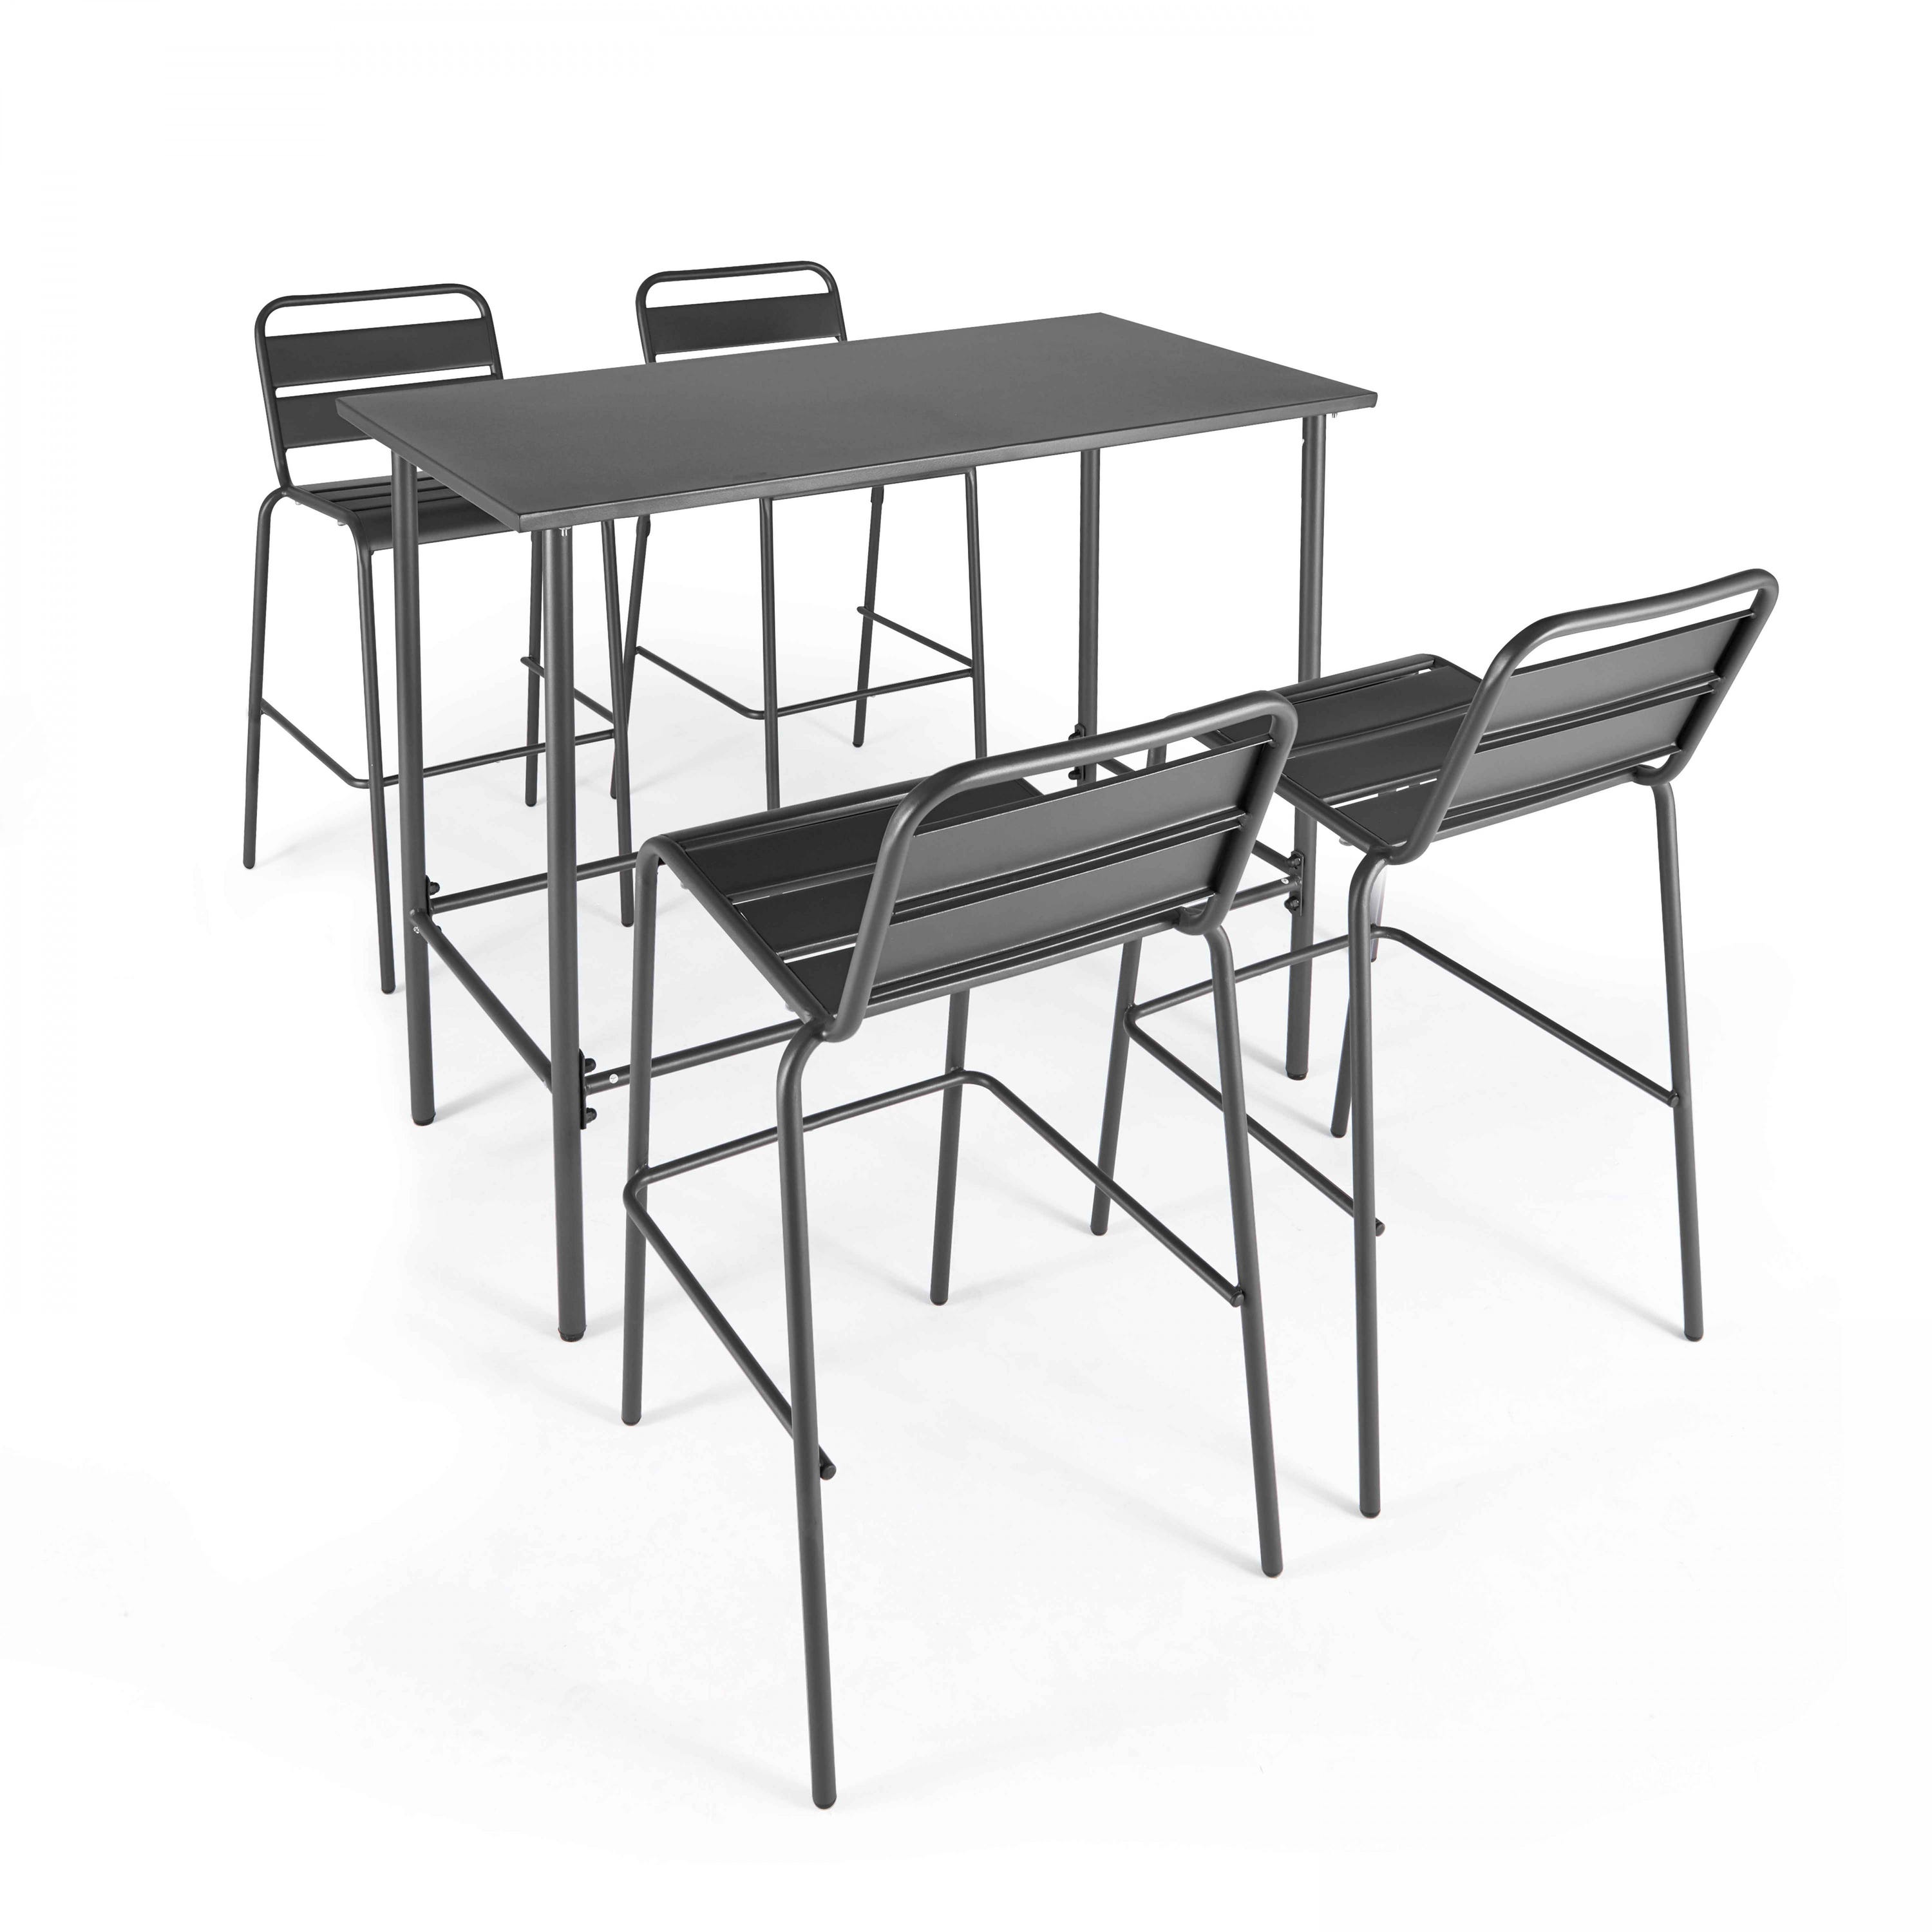 Table de bar haute + 4 chaises hautes en métal style indus